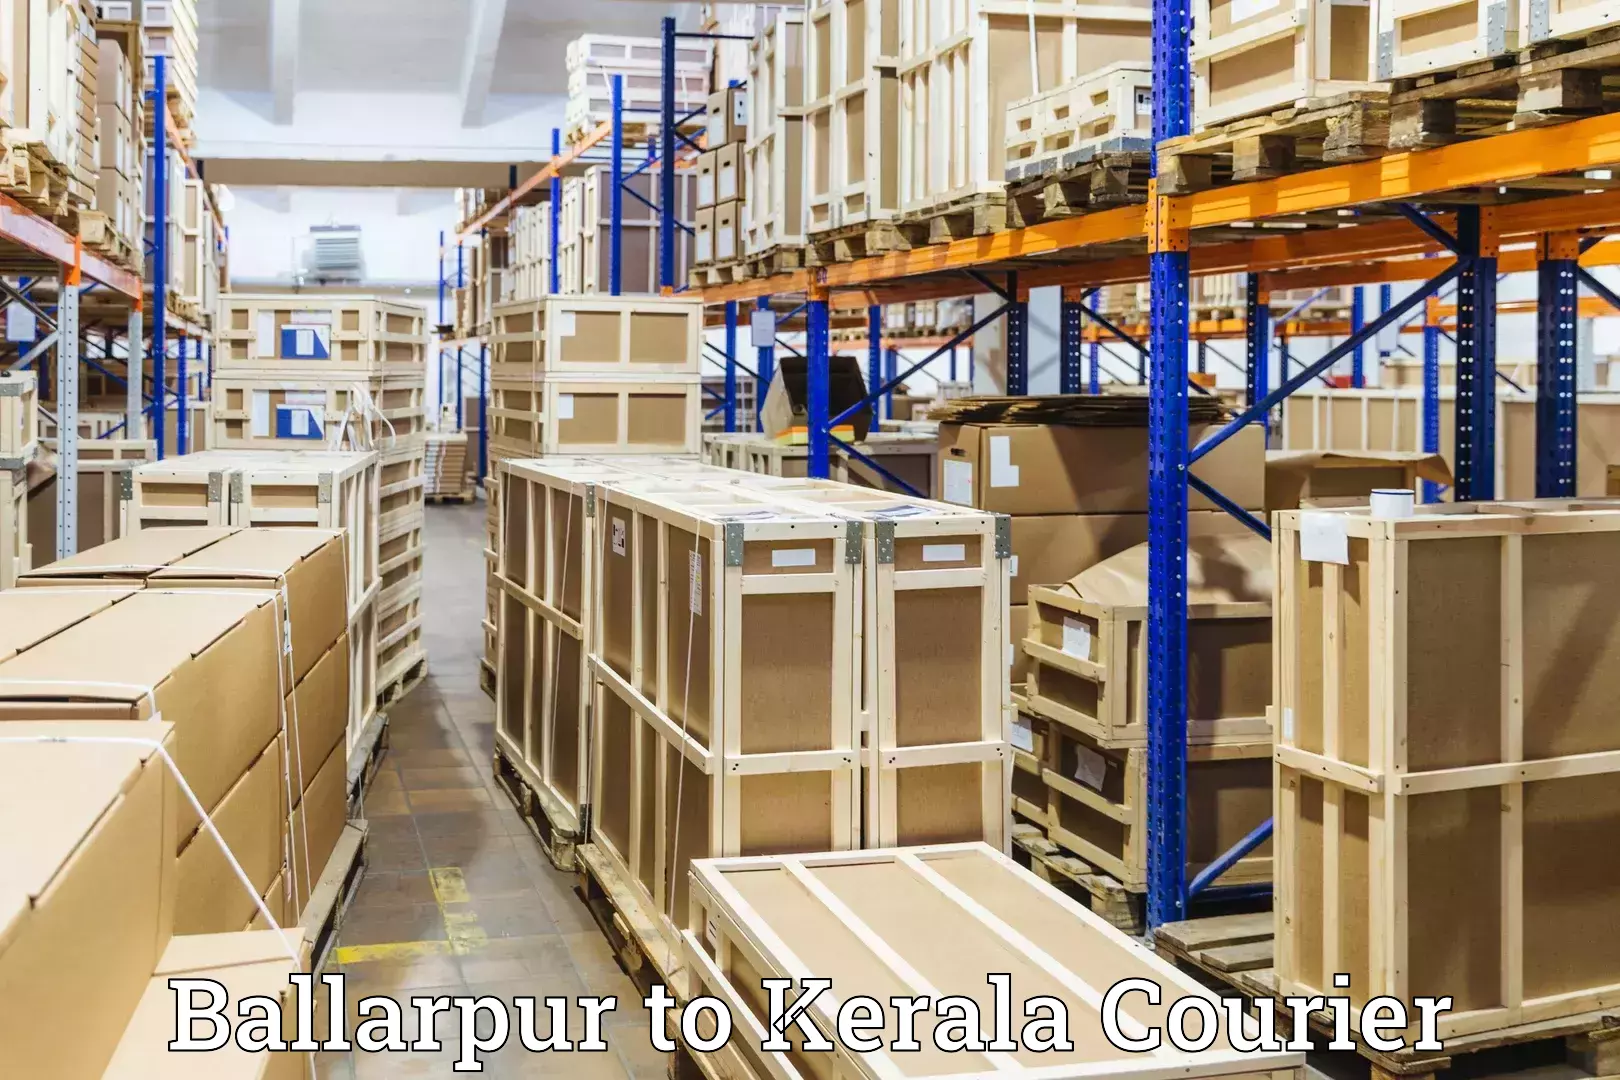 Luggage transit service Ballarpur to Koothattukulam